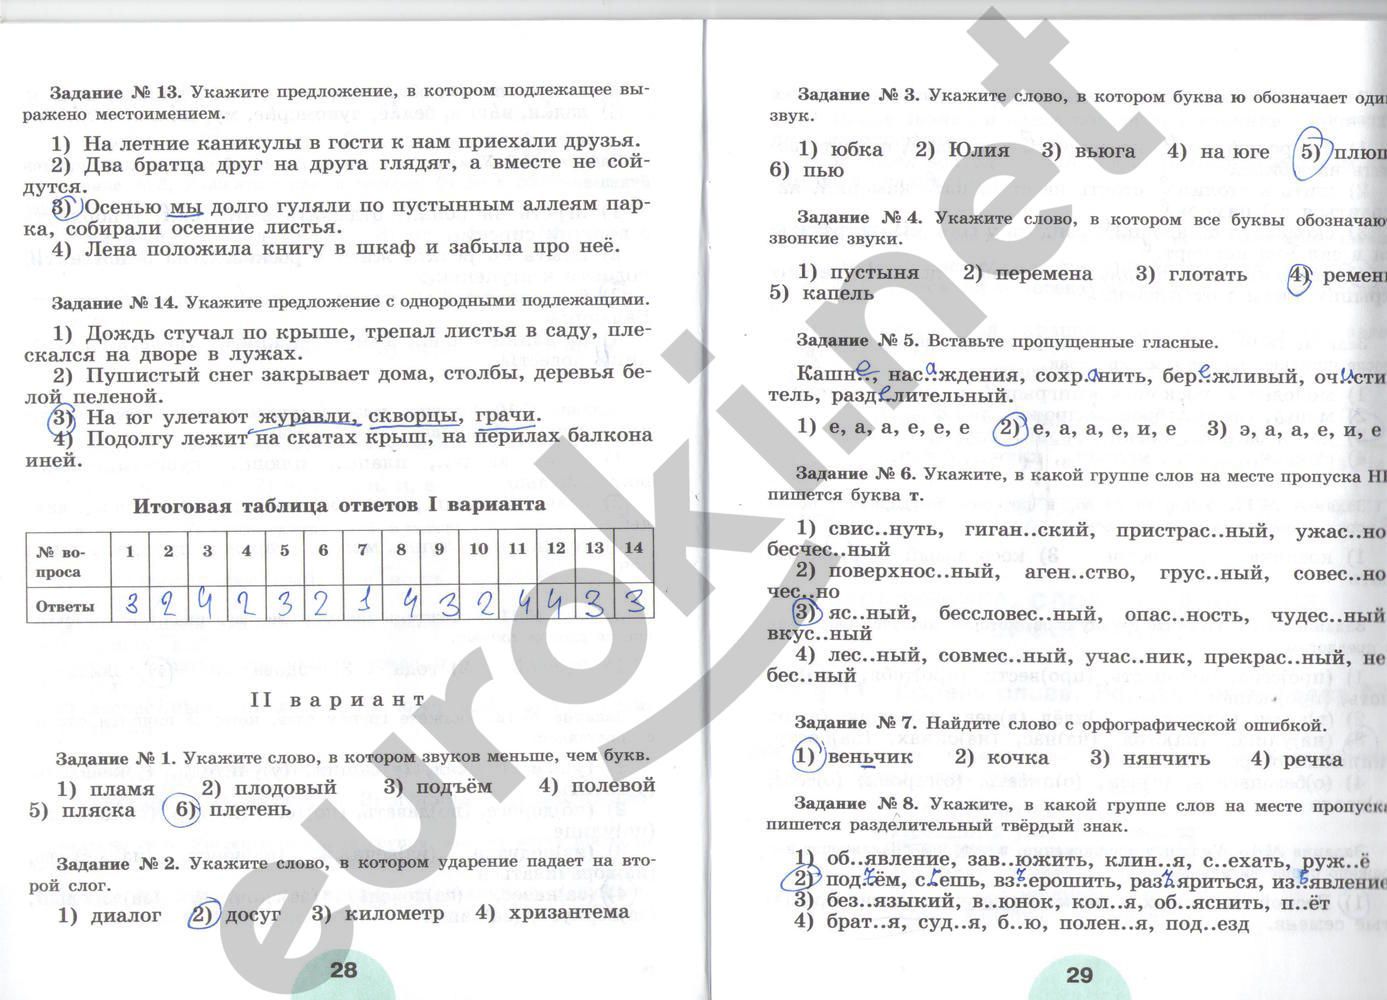 ГДЗ Русский язык 5 класс - стр. 28-29